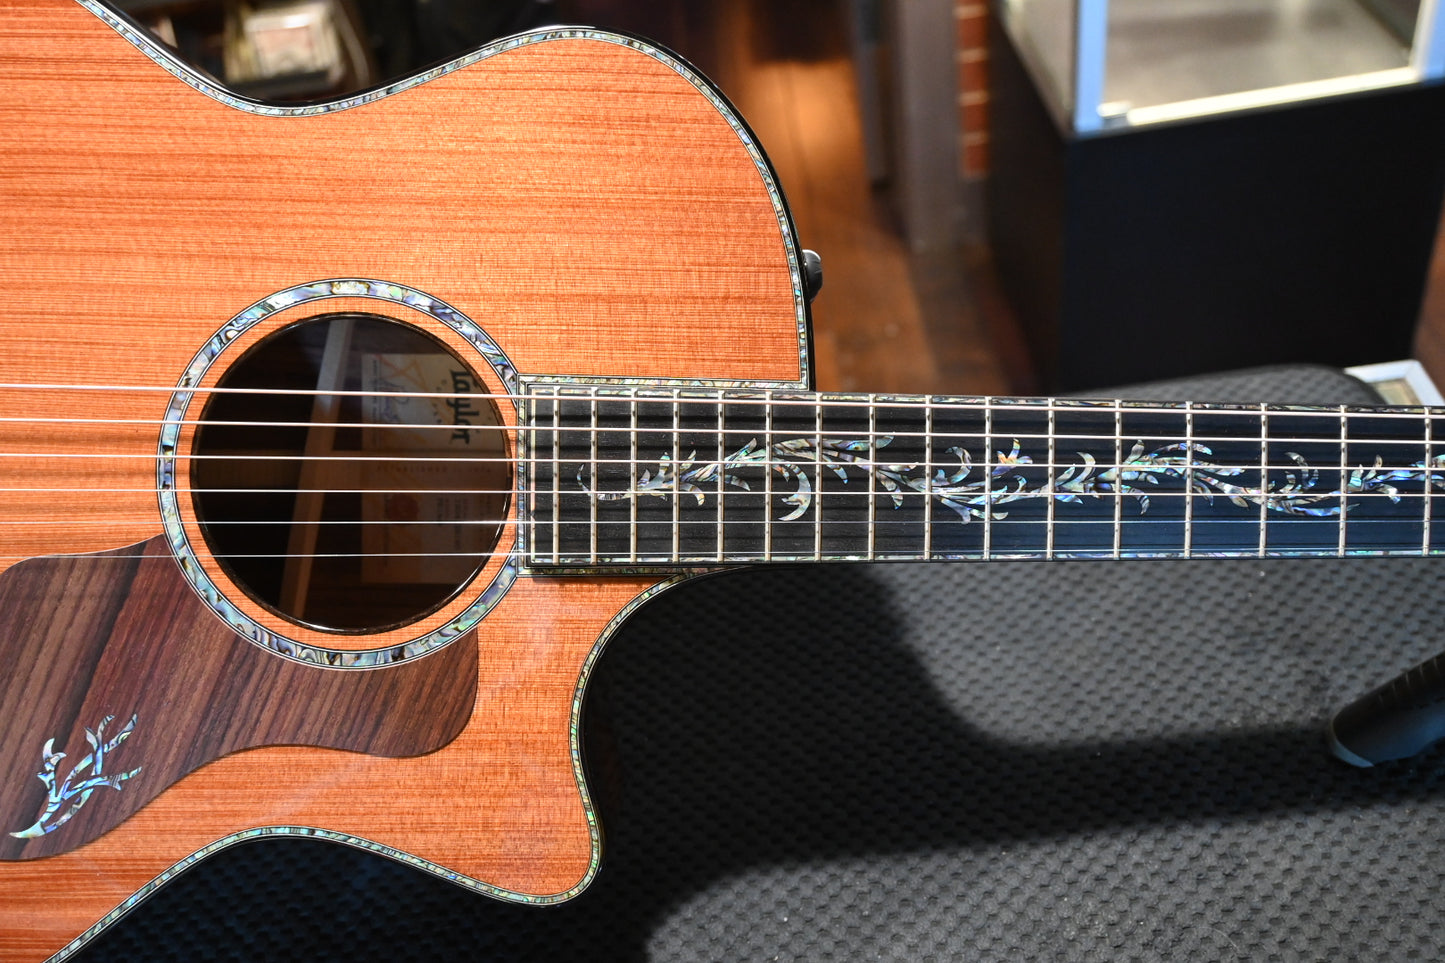 Taylor PS14ce Presentation Series Sinker Redwood/Honduran Rosewood Guitar #2190 - Danville Music